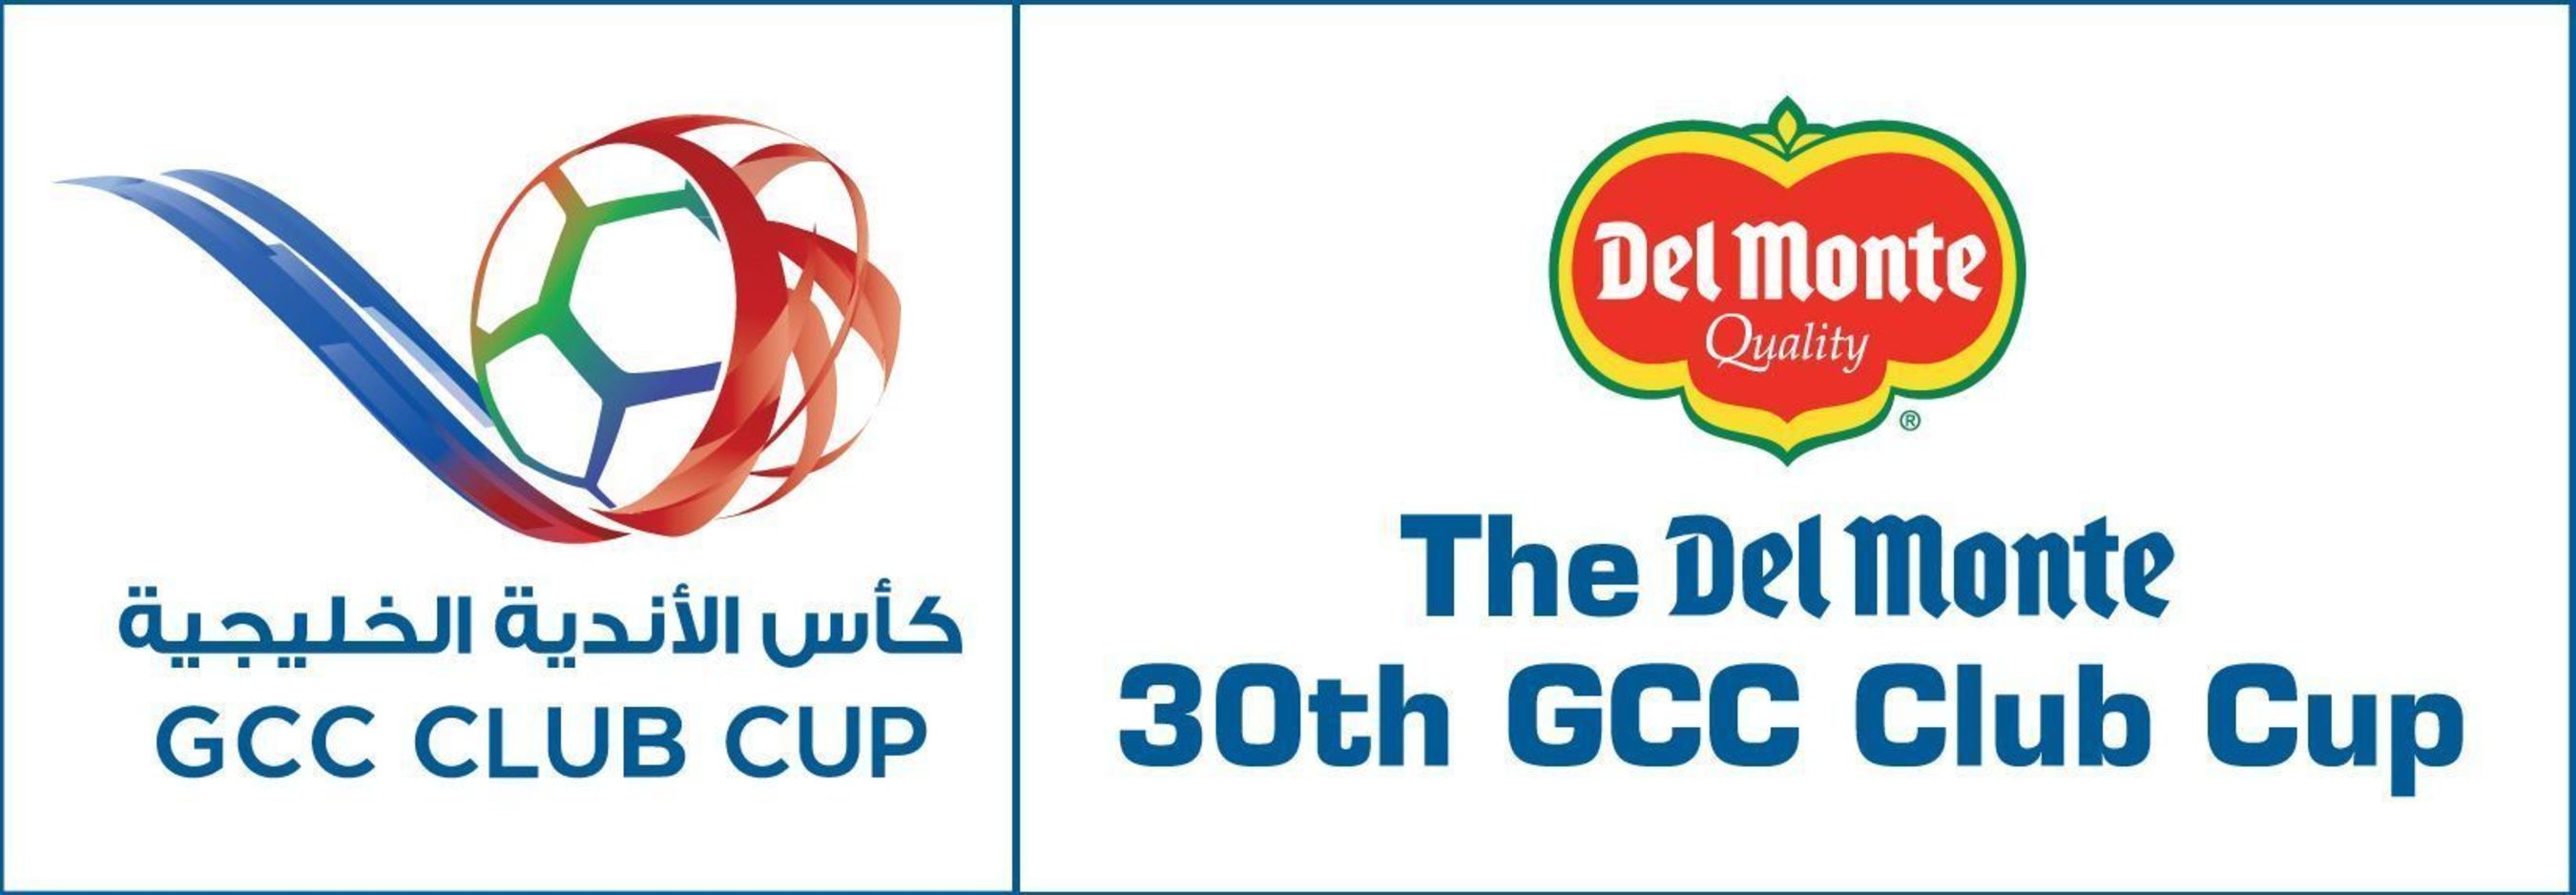 The Del Monte 30th GCC Club Cup (PRNewsFoto/Del Monte)